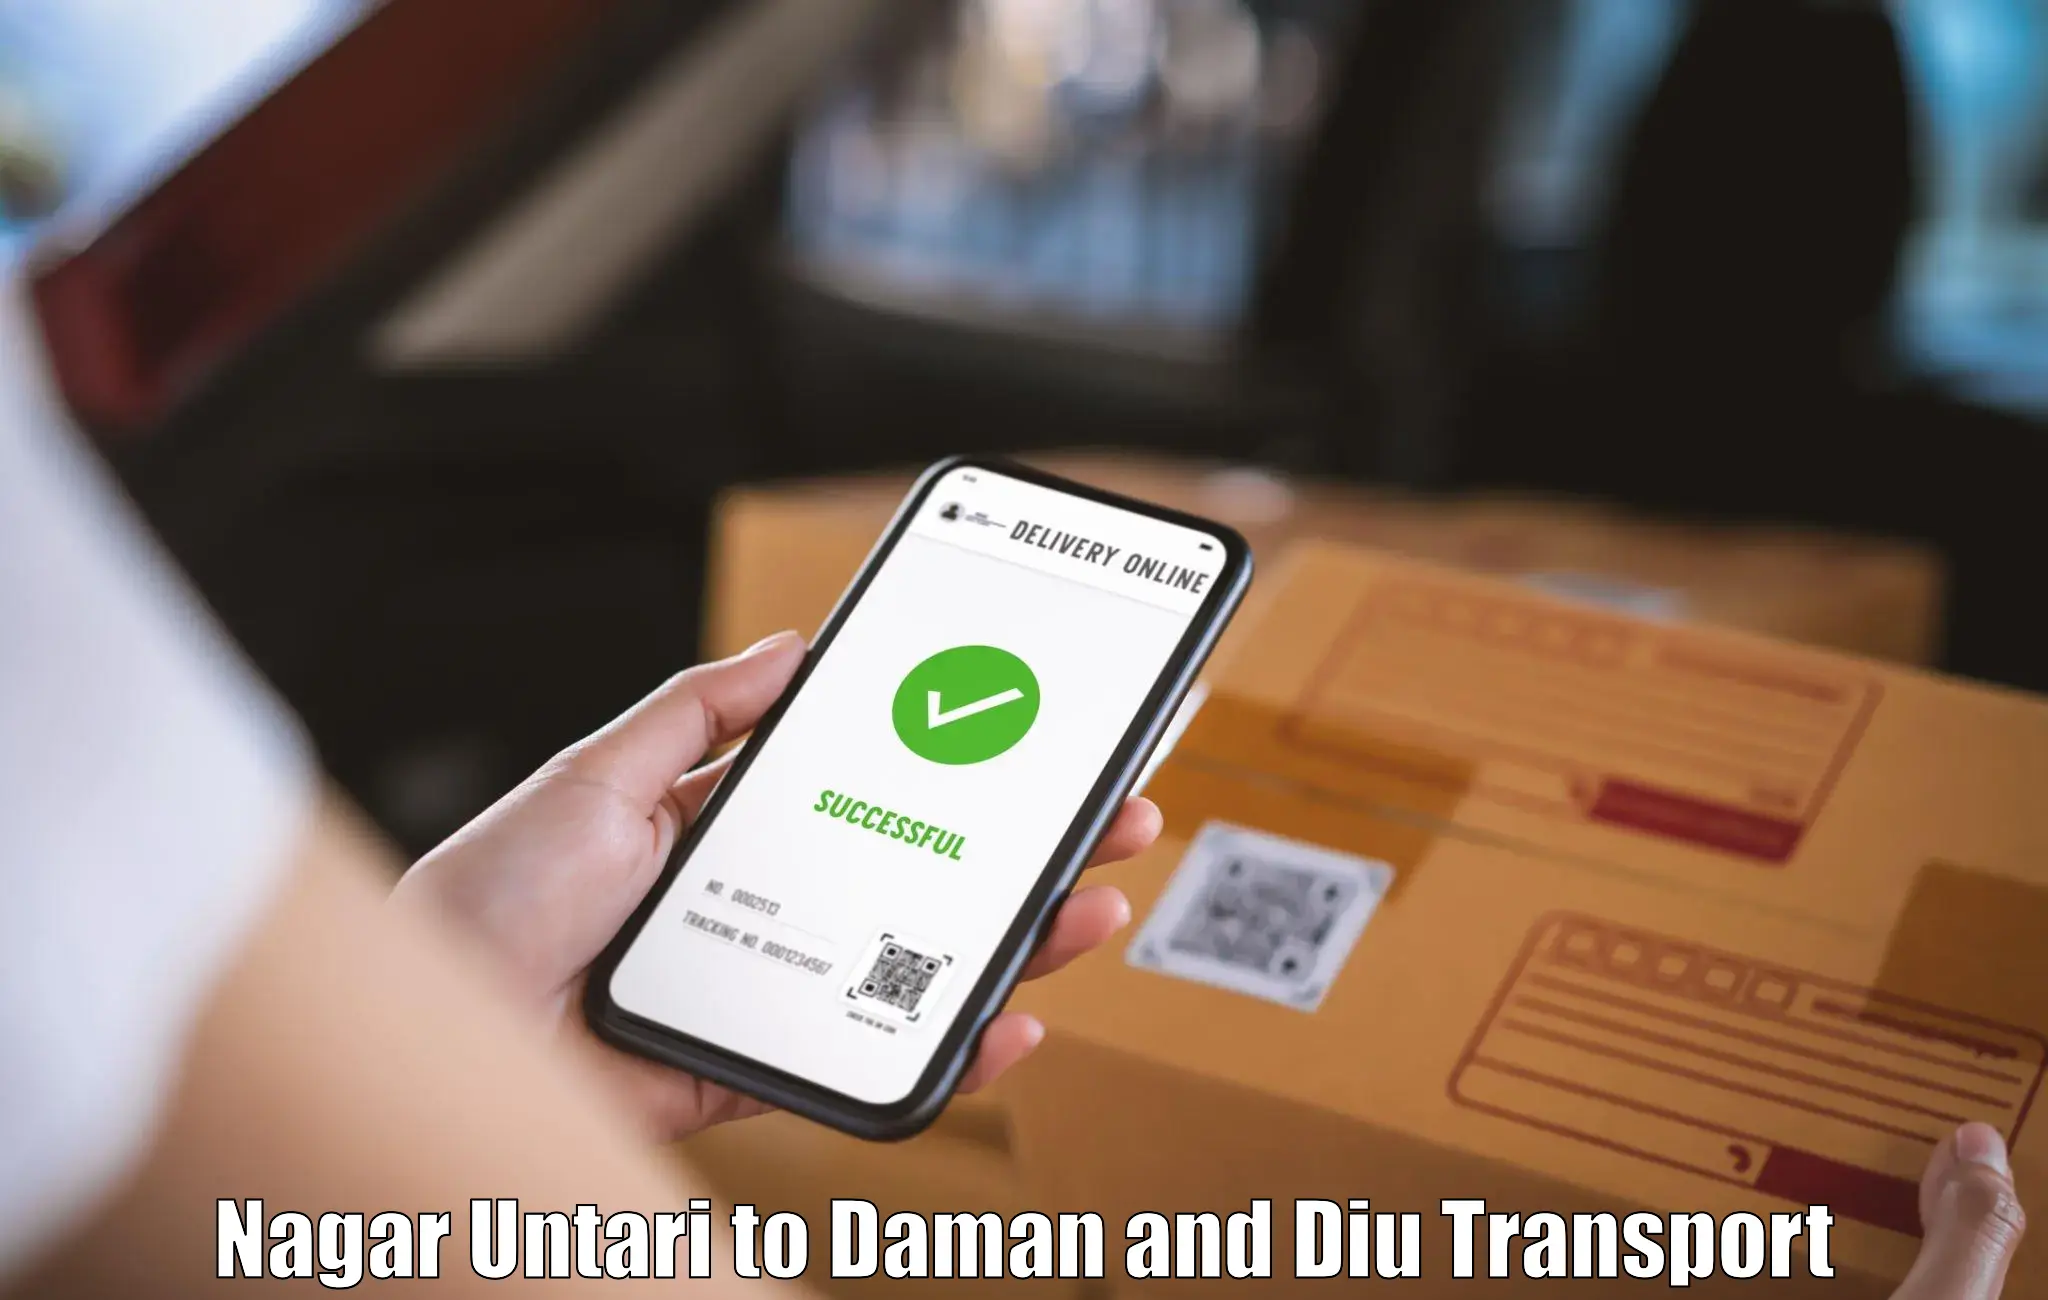 Air freight transport services Nagar Untari to Daman and Diu